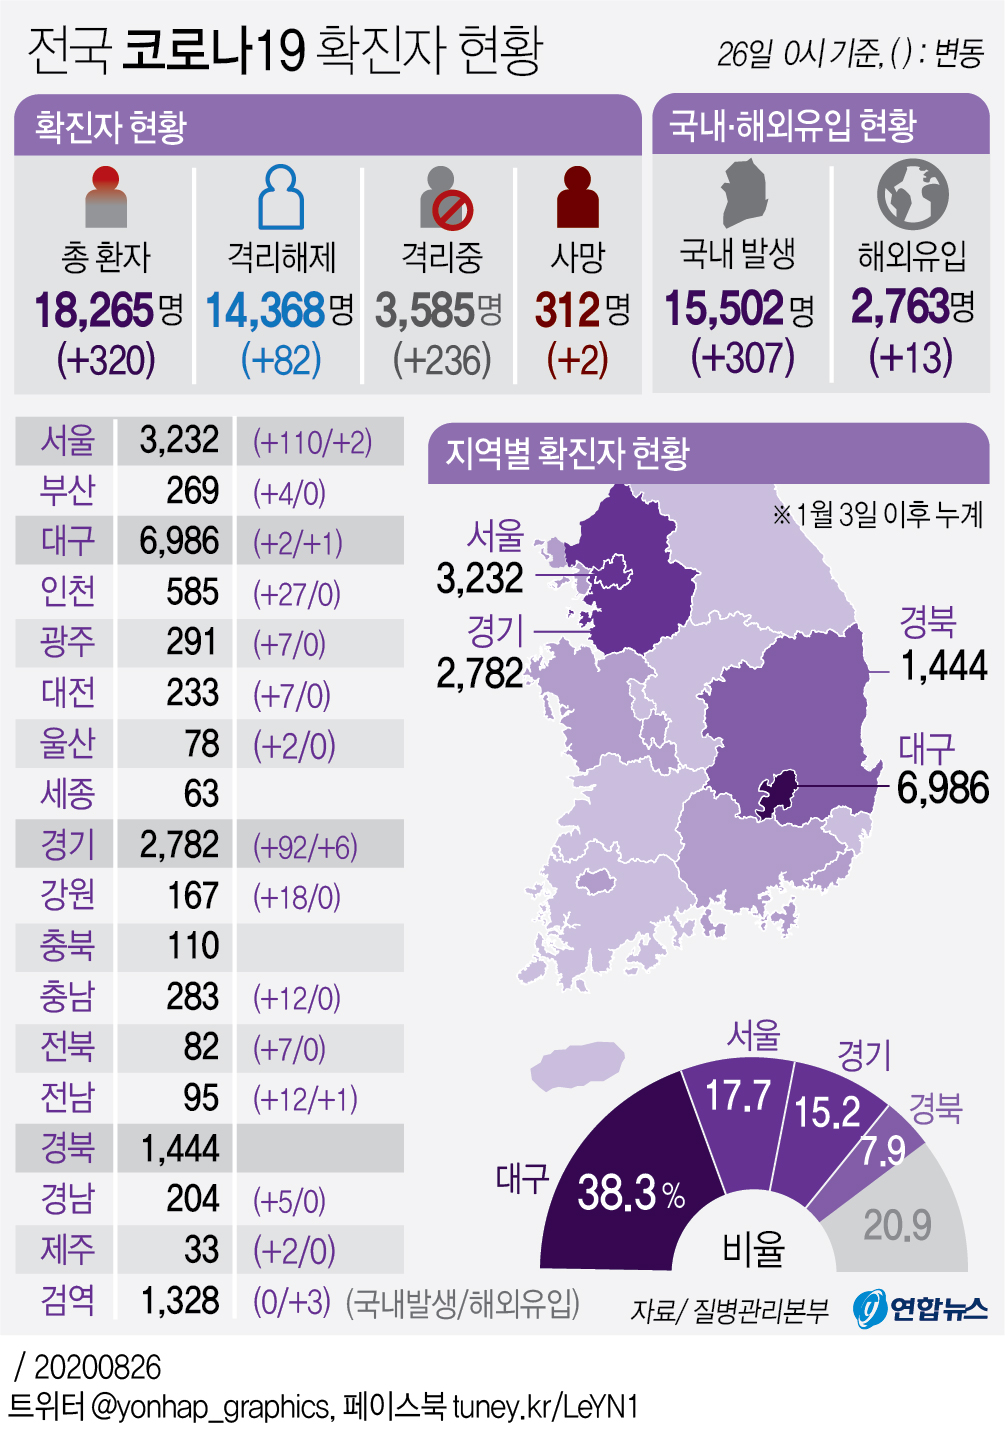 (شامل) كوريا الجنوبية تسجل 320 حالة إصابة جديدة بفيروس كورونا، منها 237 في سيئول وضواحيها - 2